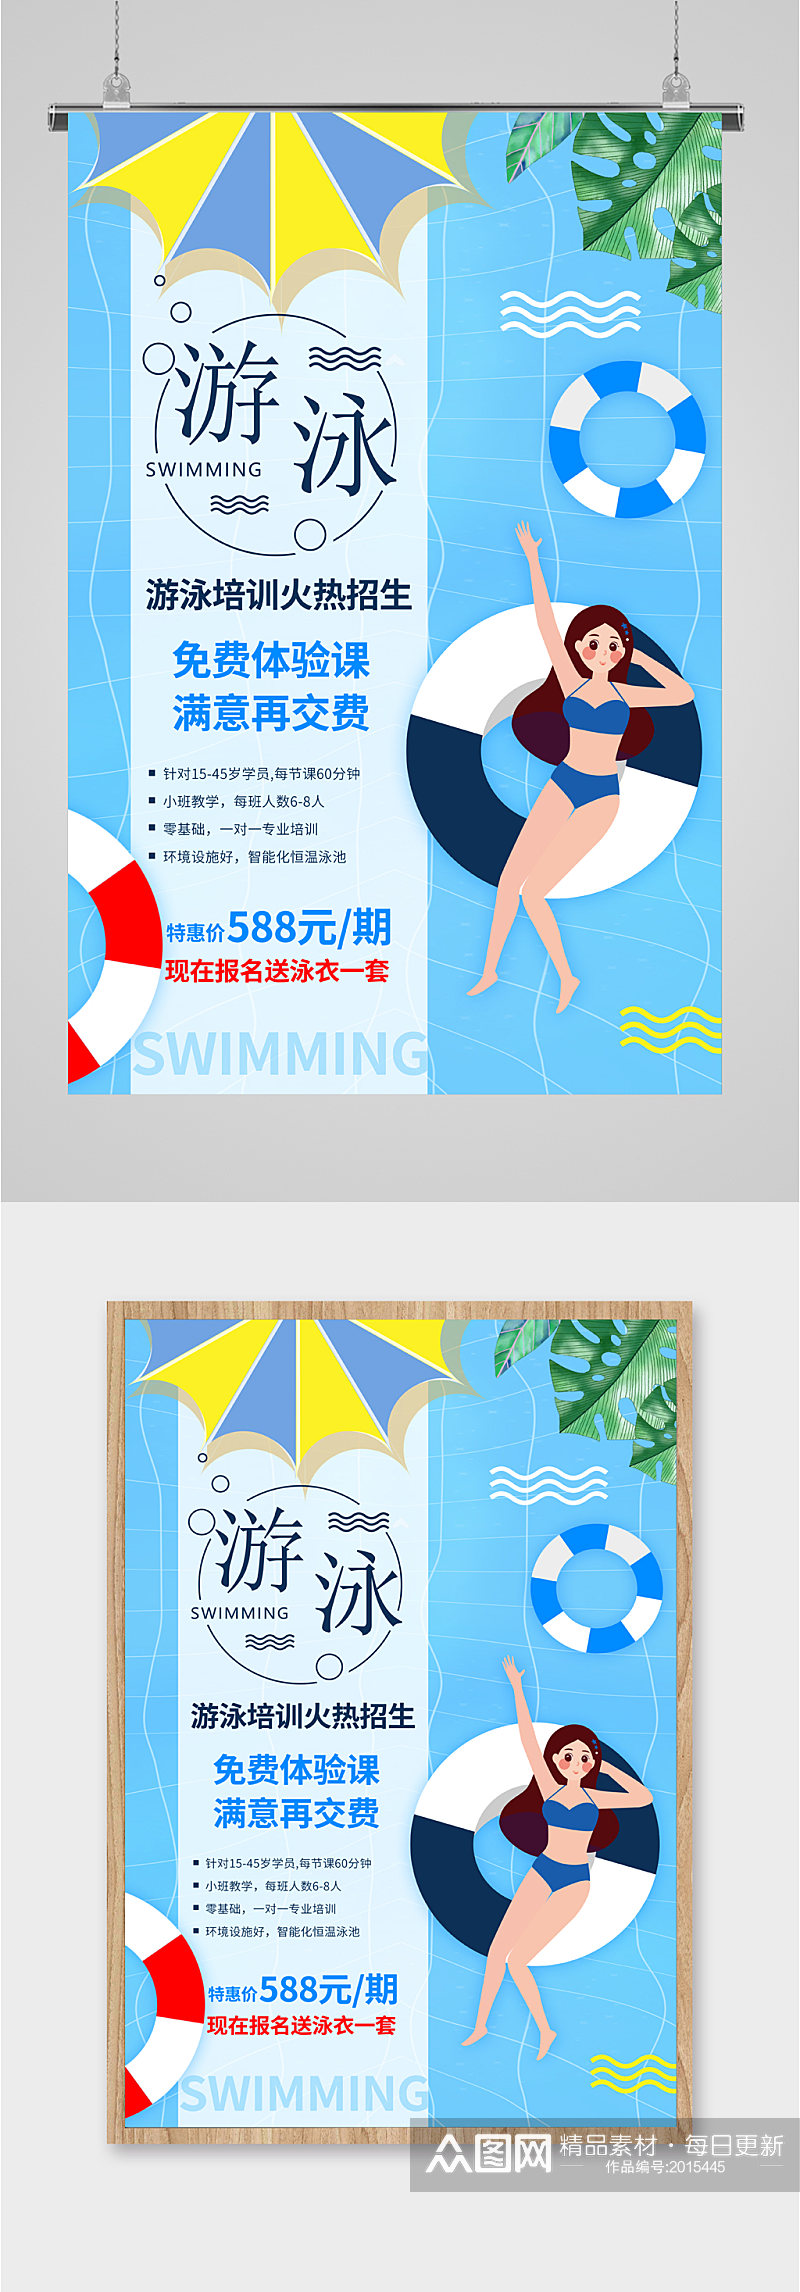 夏日游泳班招生海报素材